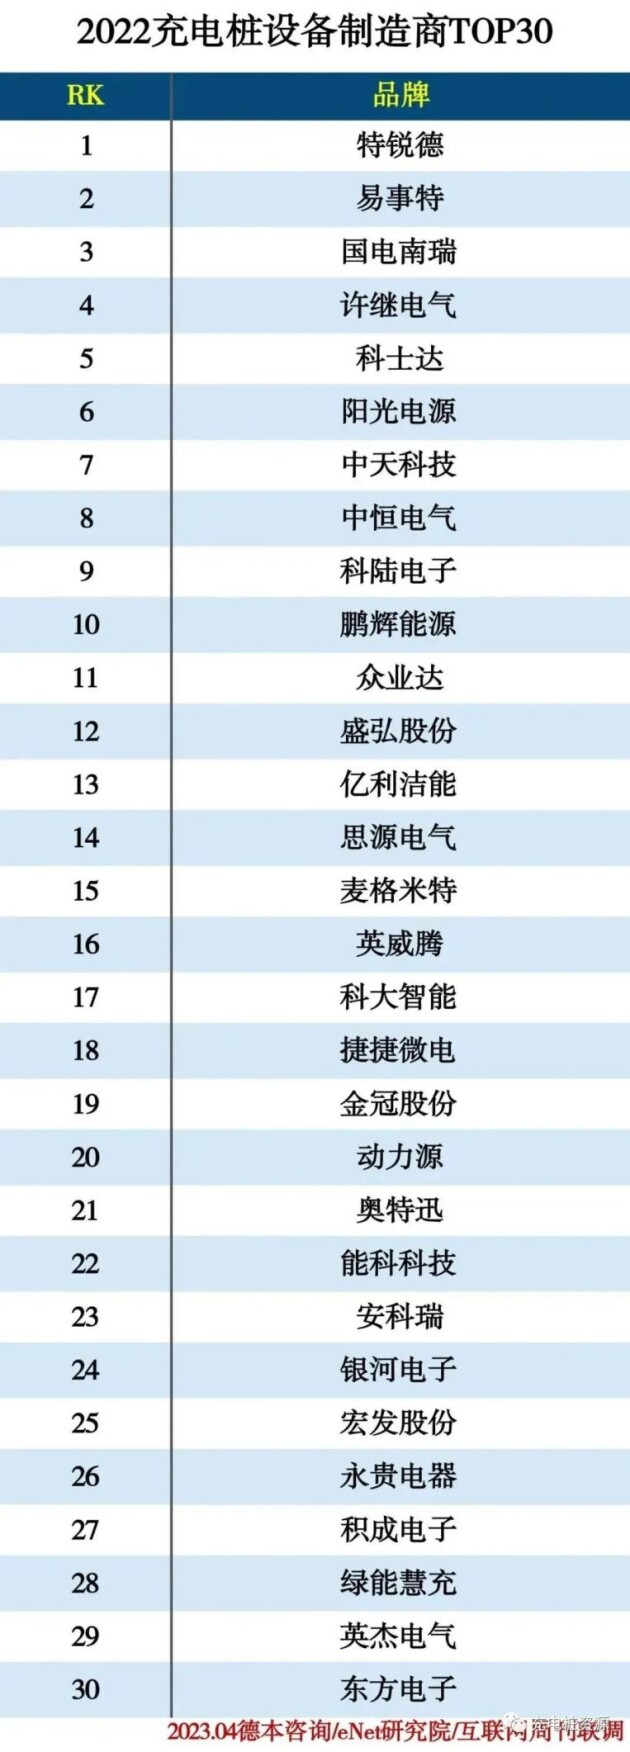 易事特集团荣登“2022年中国充电桩制造商TOP30”榜单前列